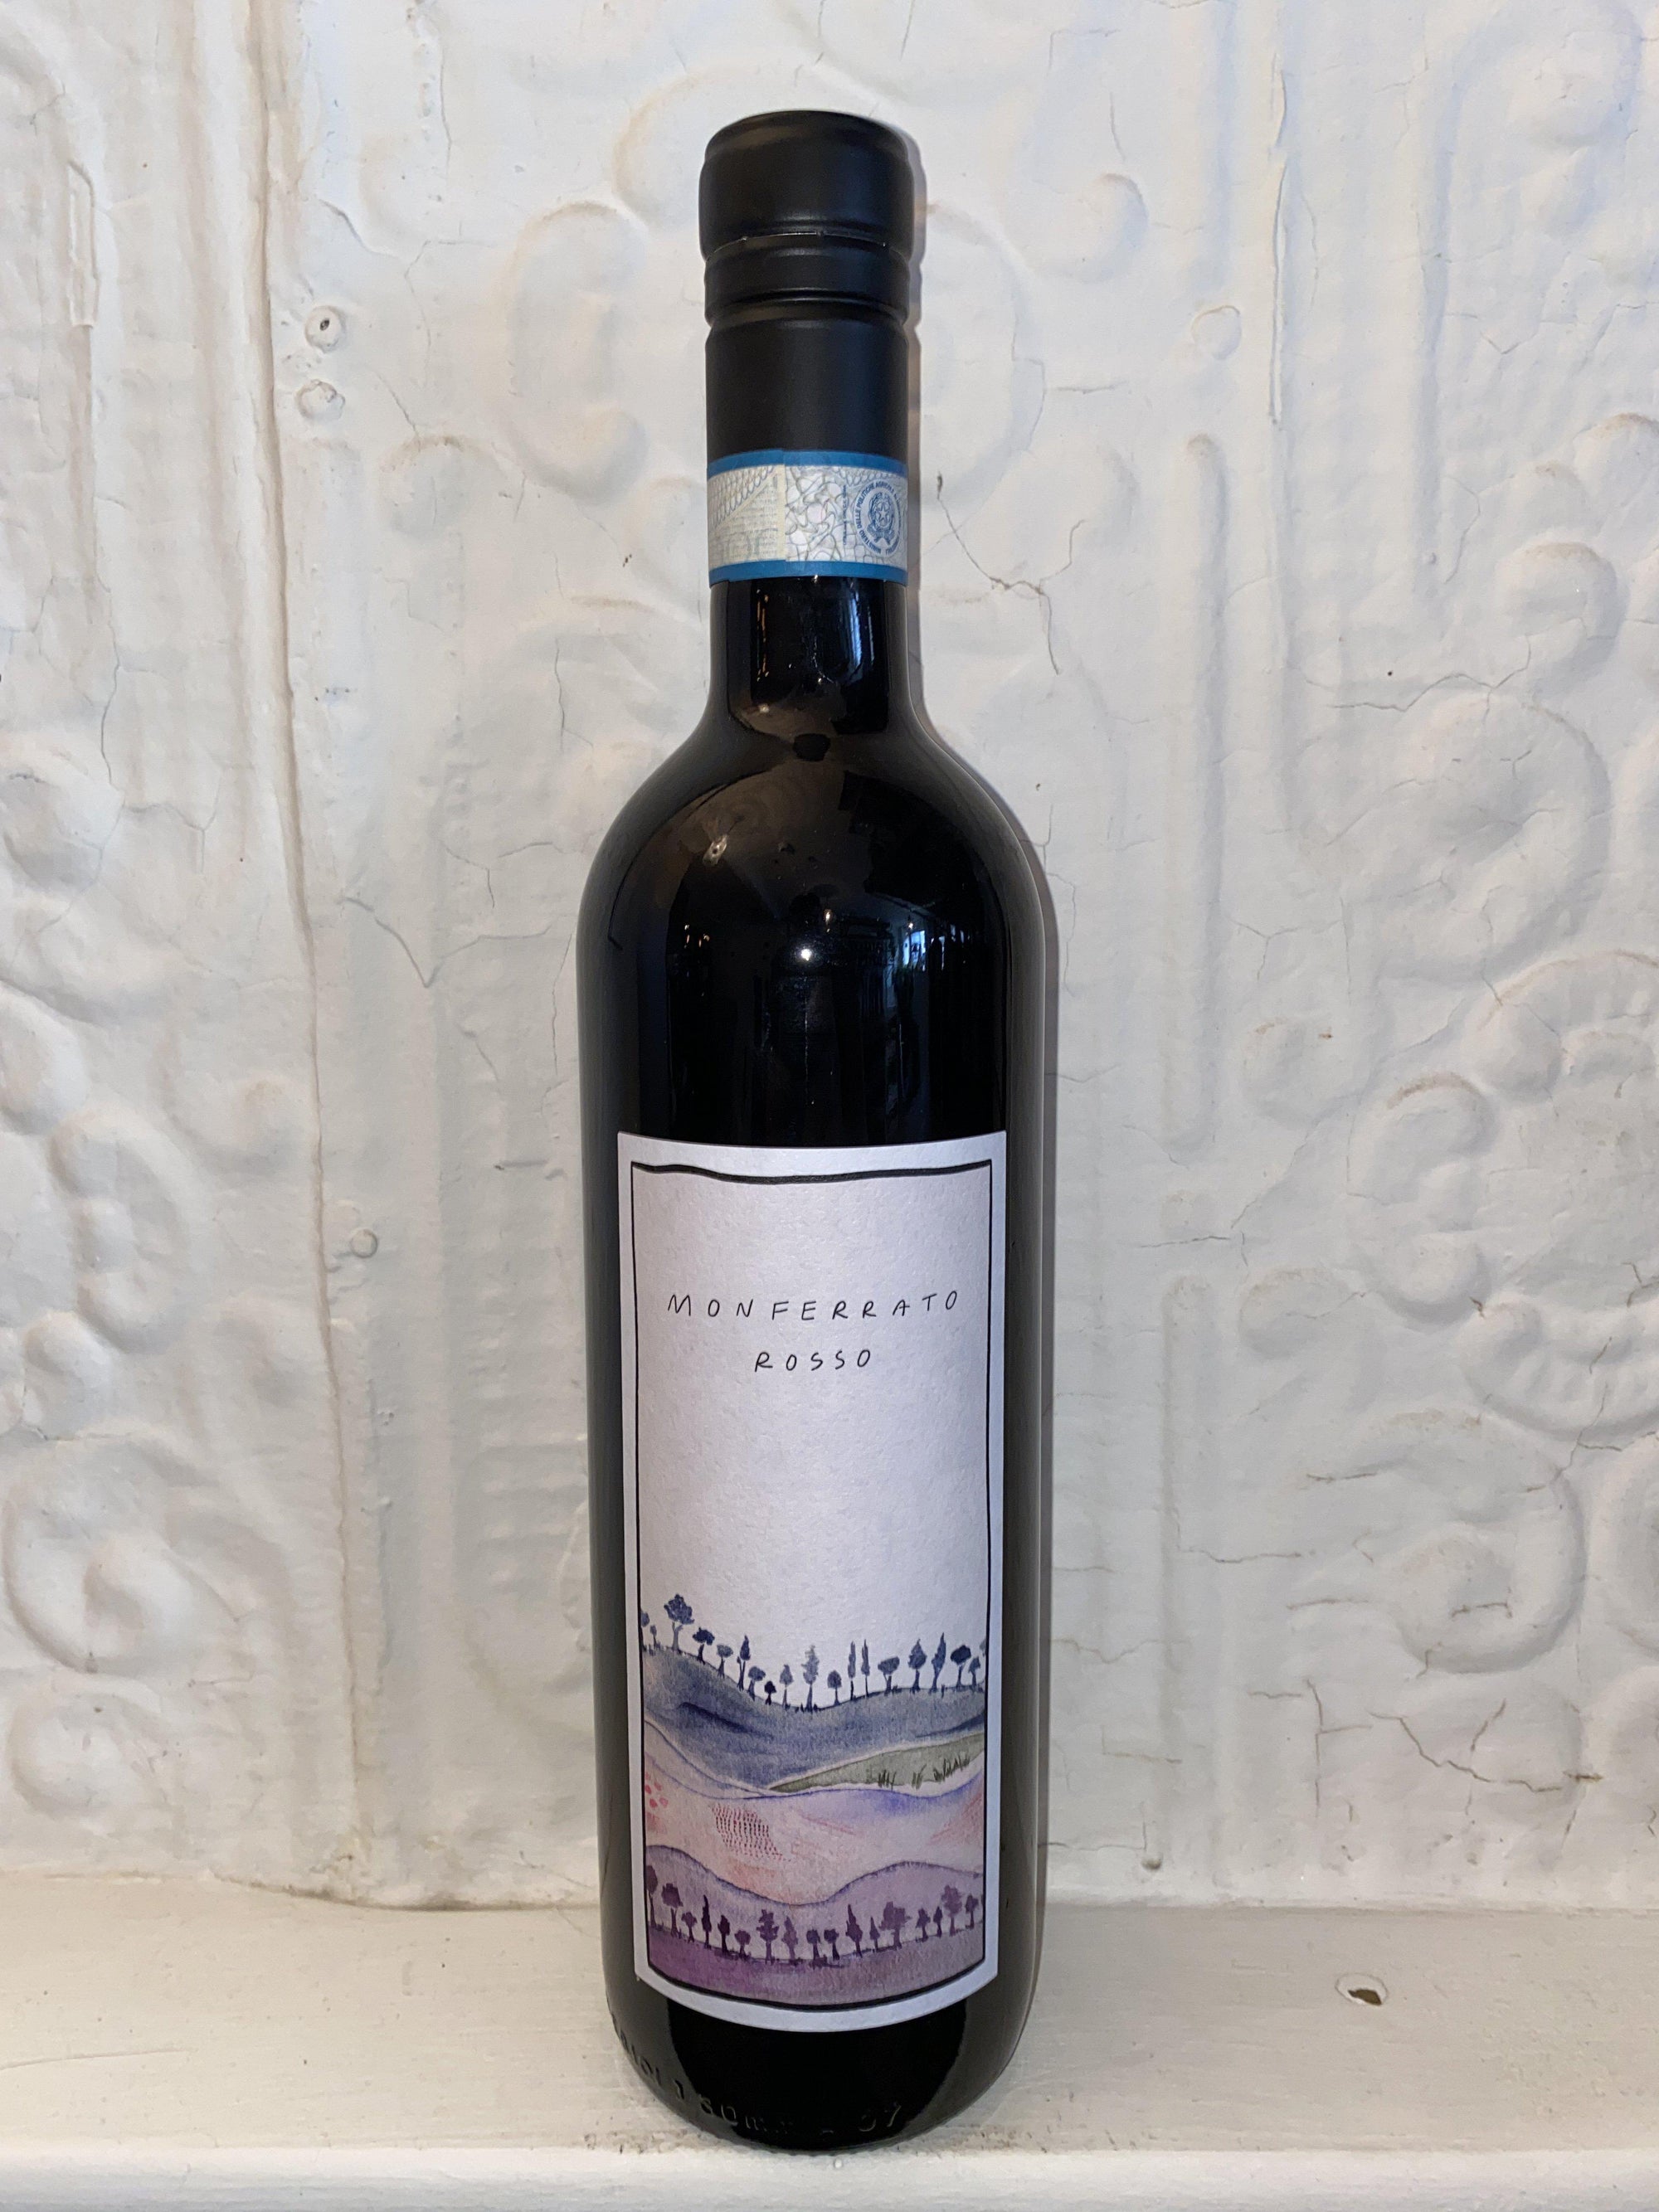 Monferrato Rosso, Prima Piuma 2019 (Piedmont, Italy)-Wine-Bibber & Bell